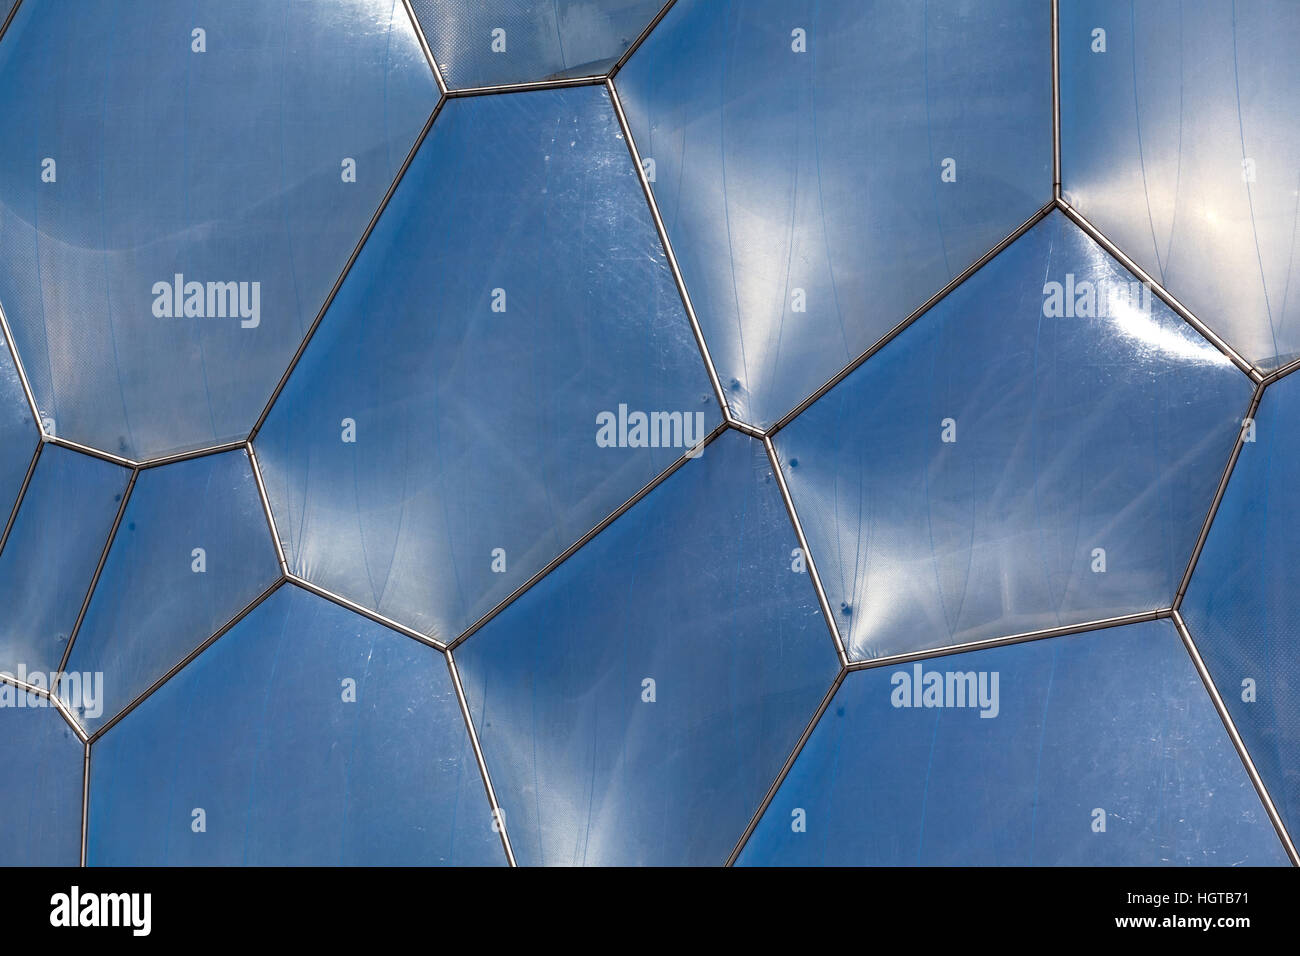 Detalle de la piel exclusivos del Centro Acuático, o cubo de agua, utilizado durante los 2008 Juegos Olímpicos de Verano en Beijing, China Foto de stock